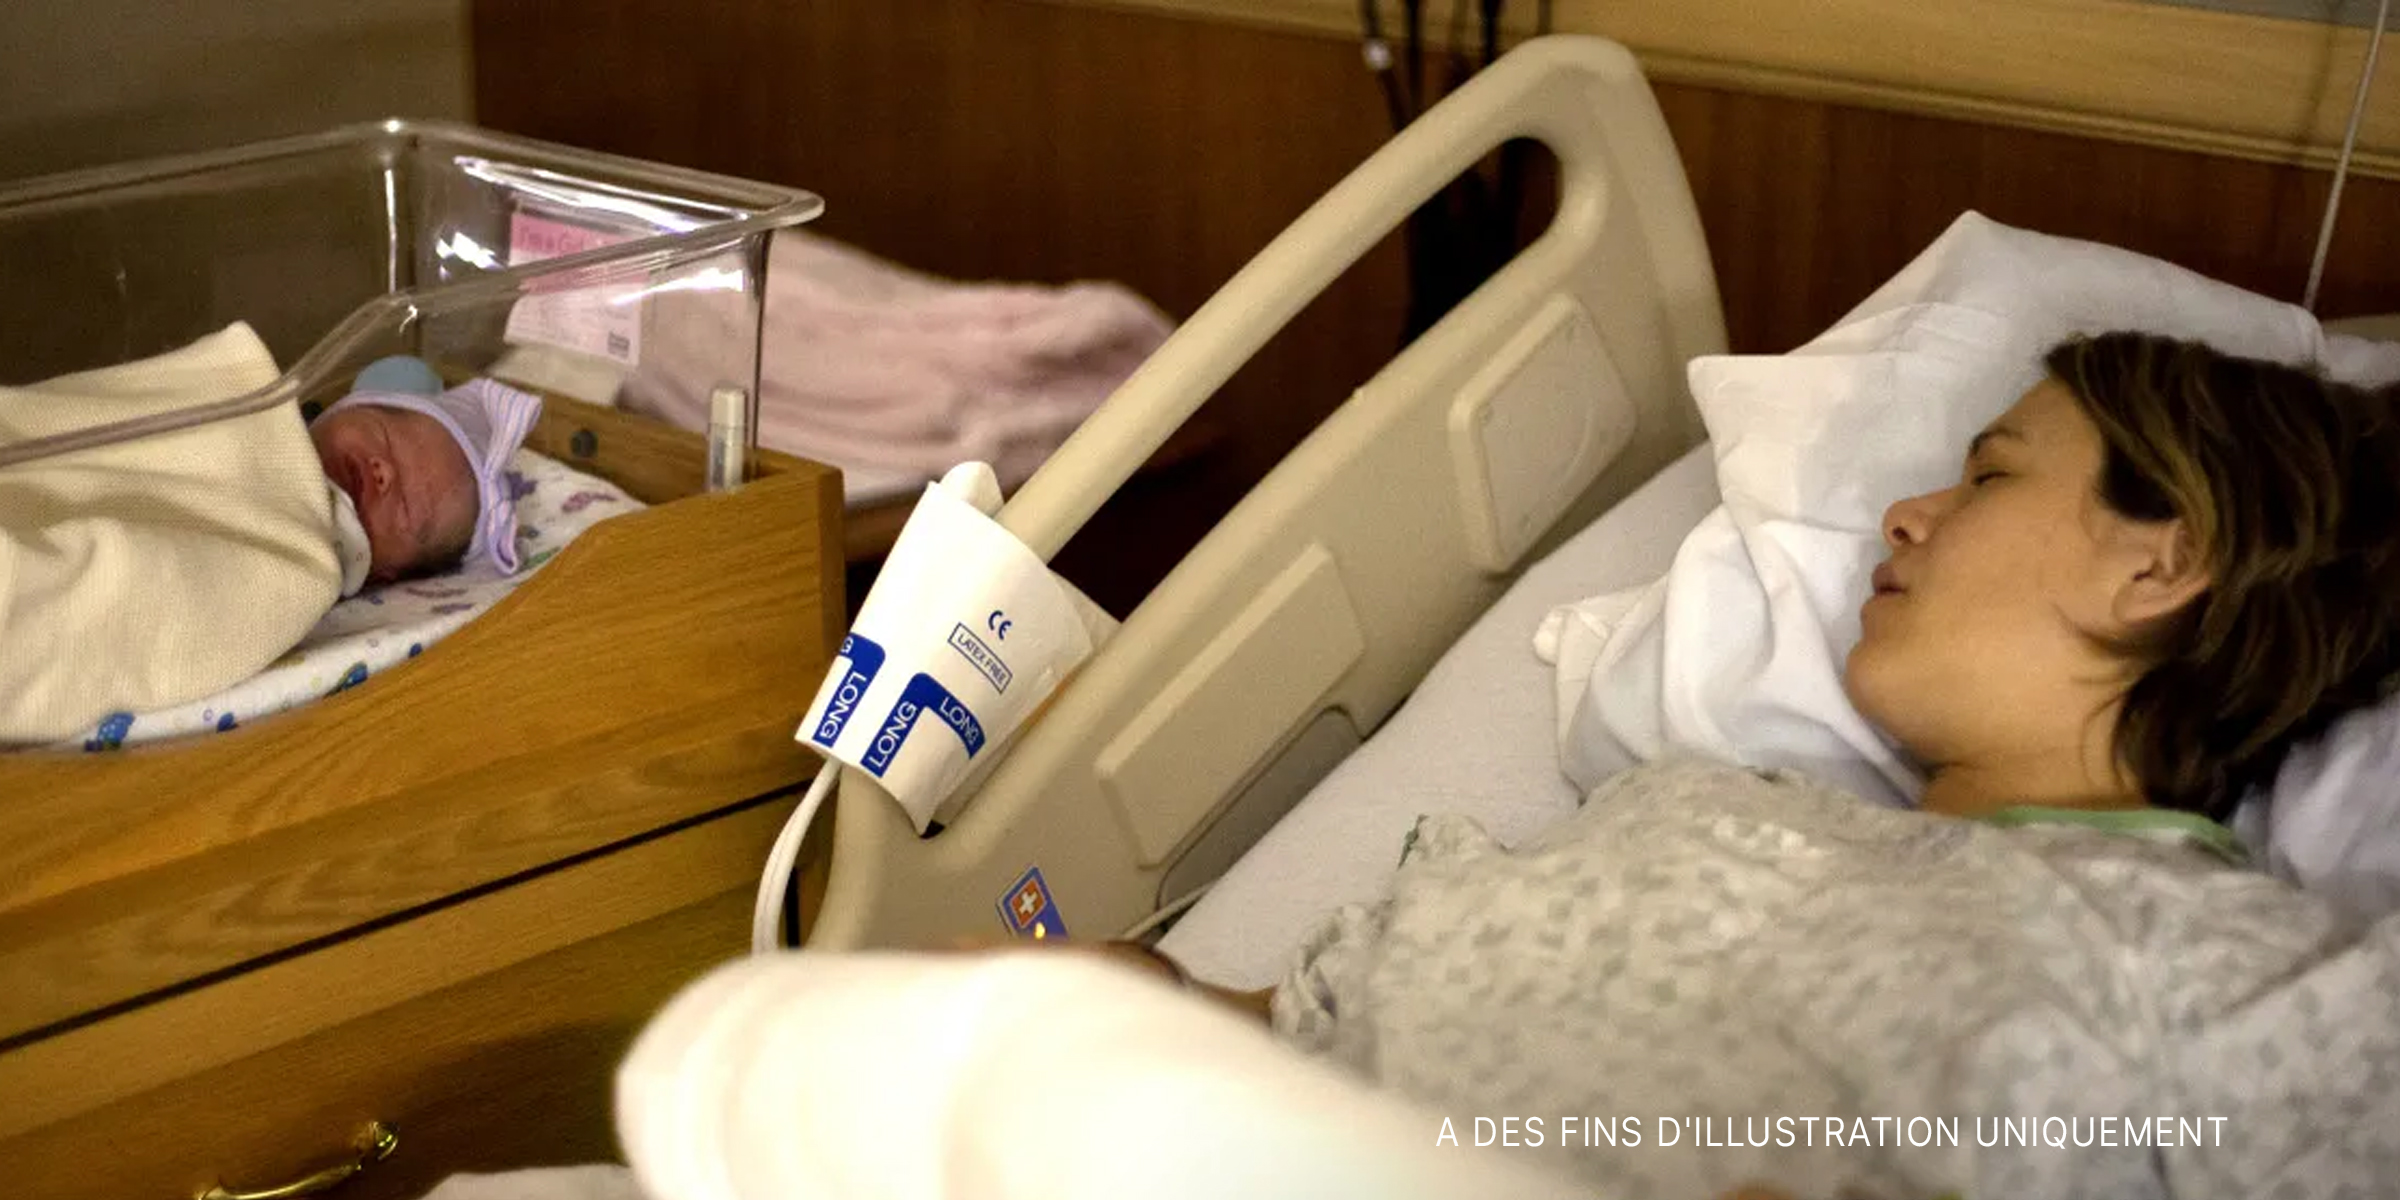 Une femme dormant dans un lit d'hôpital à côté de son nouveau-né | Source : Flickr.com/Lars Plougmann/CC BY-SA 2.0